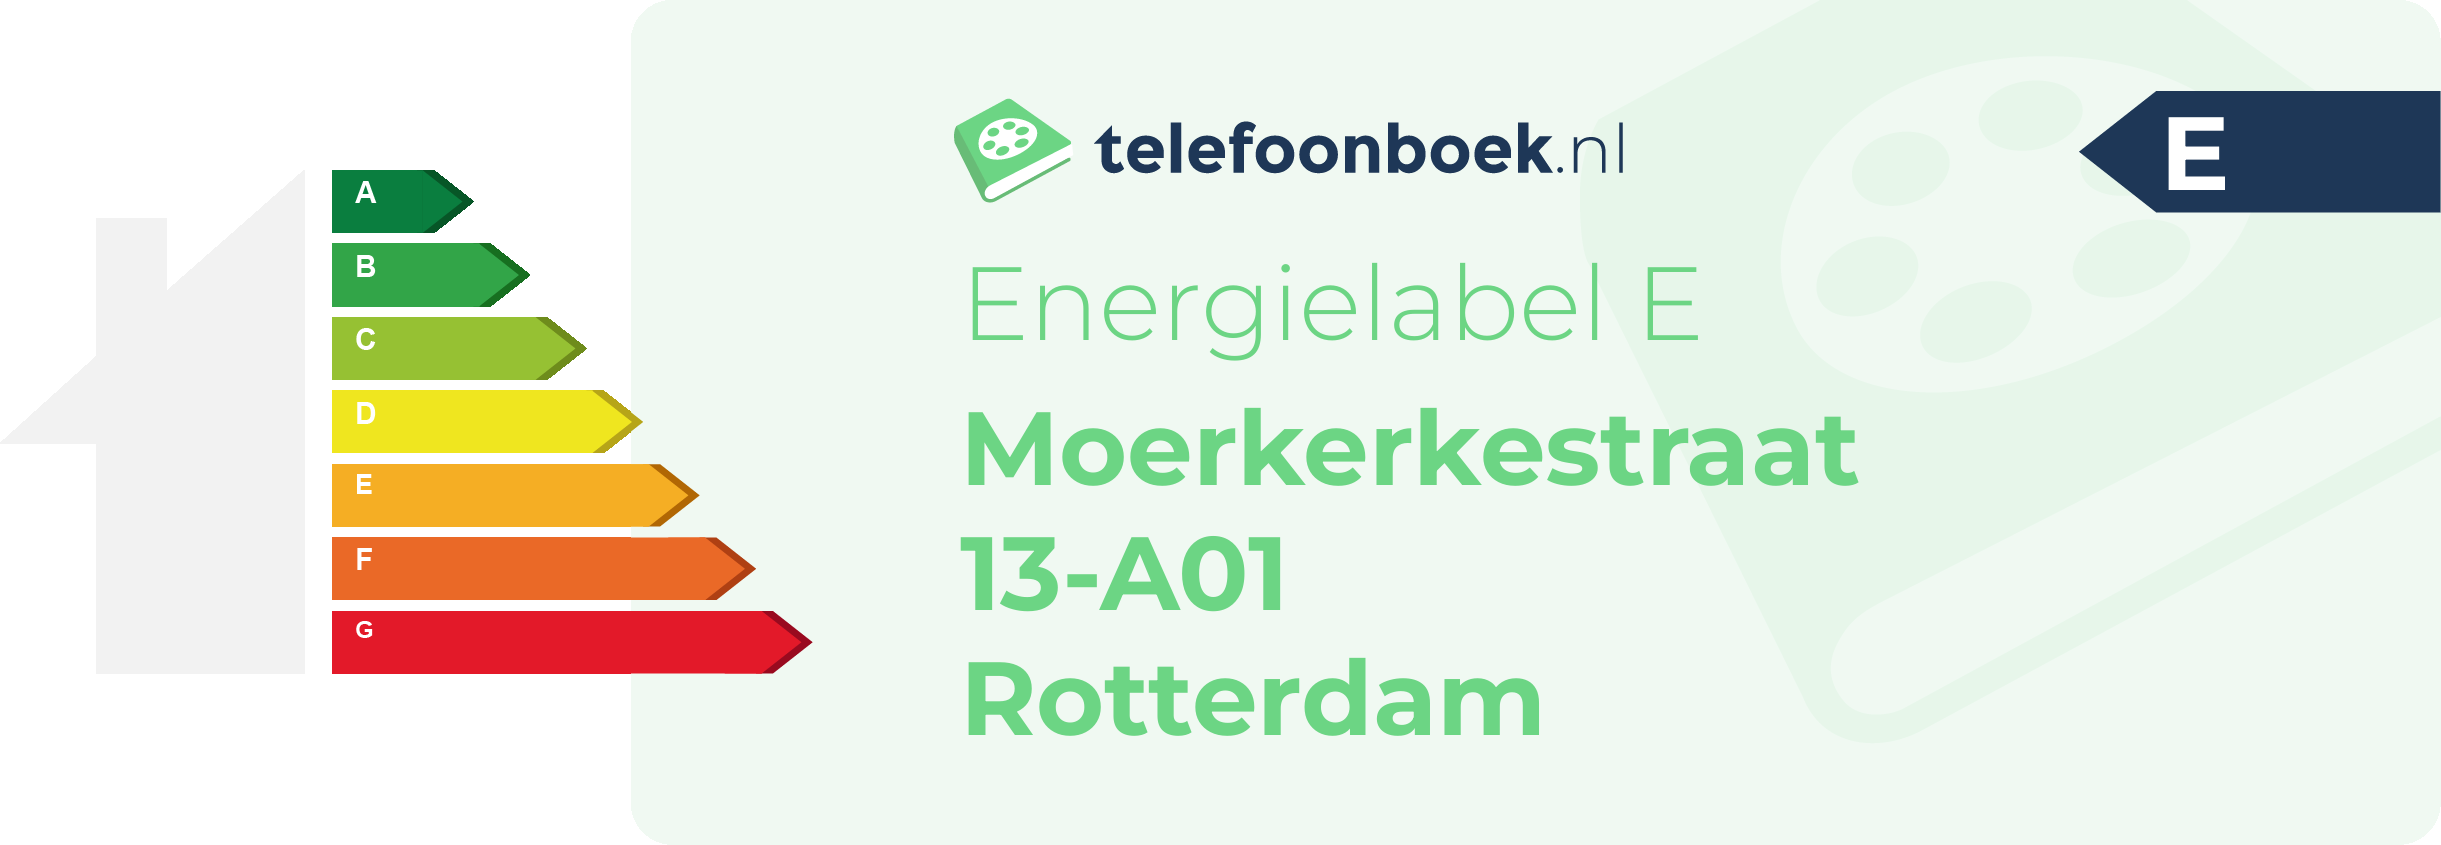 Energielabel Moerkerkestraat 13-A01 Rotterdam